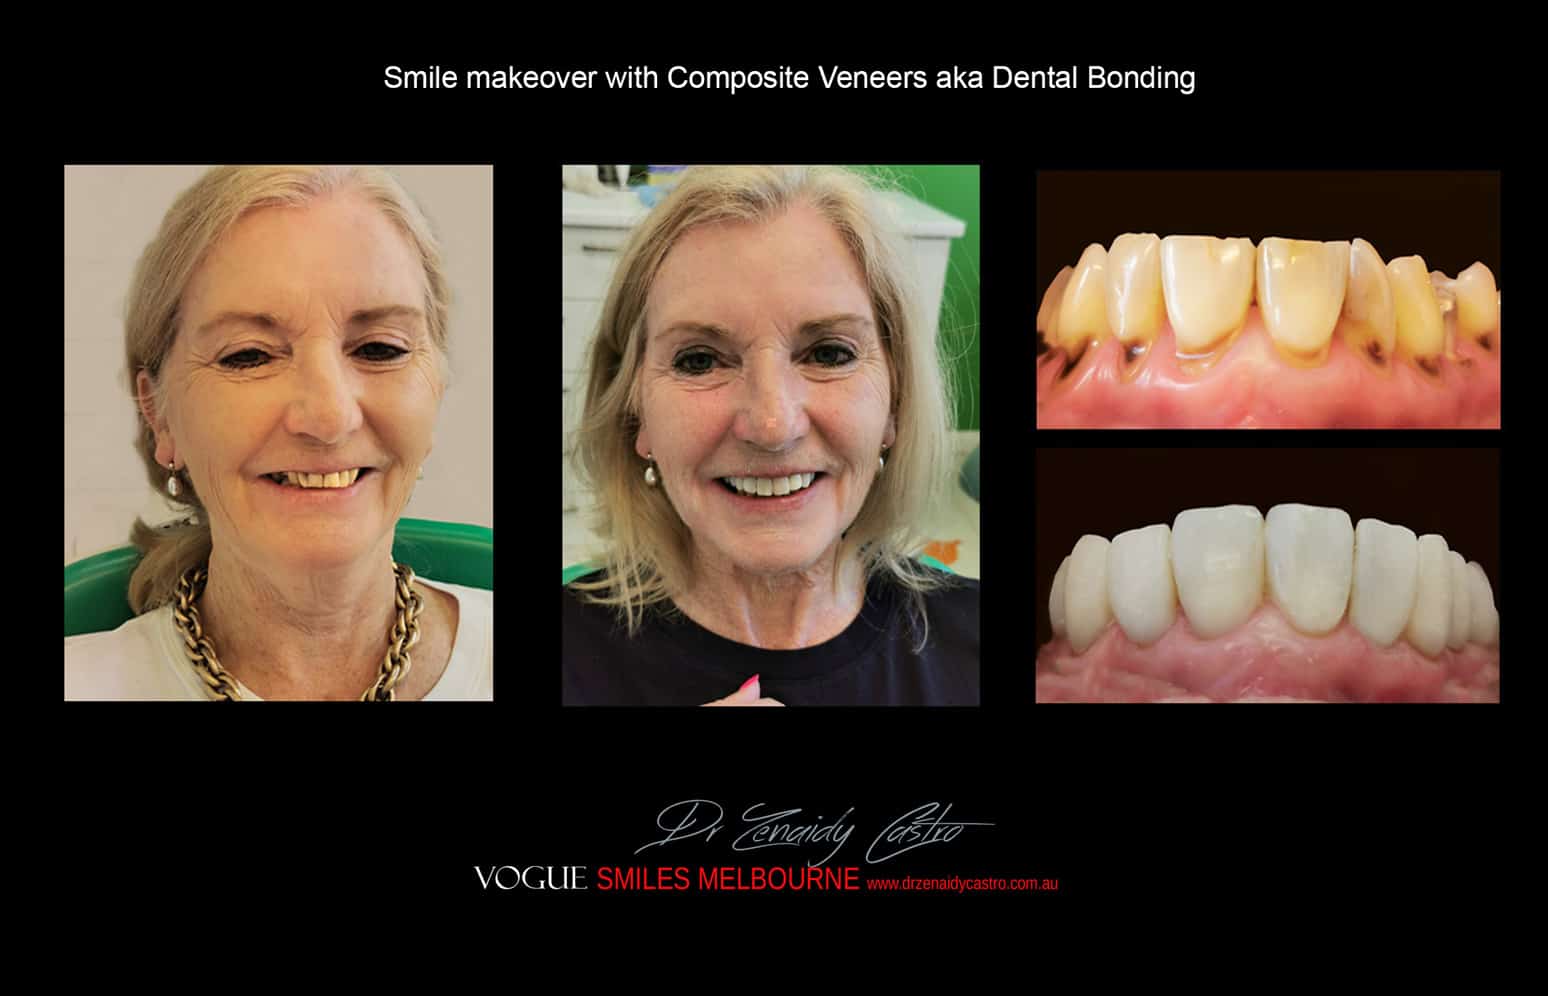 Composite Veneers Vs. Porcelain Veneers Melbourne CBD - Cosmetic Bonding versus Ceramic dental Veneers Melbourne